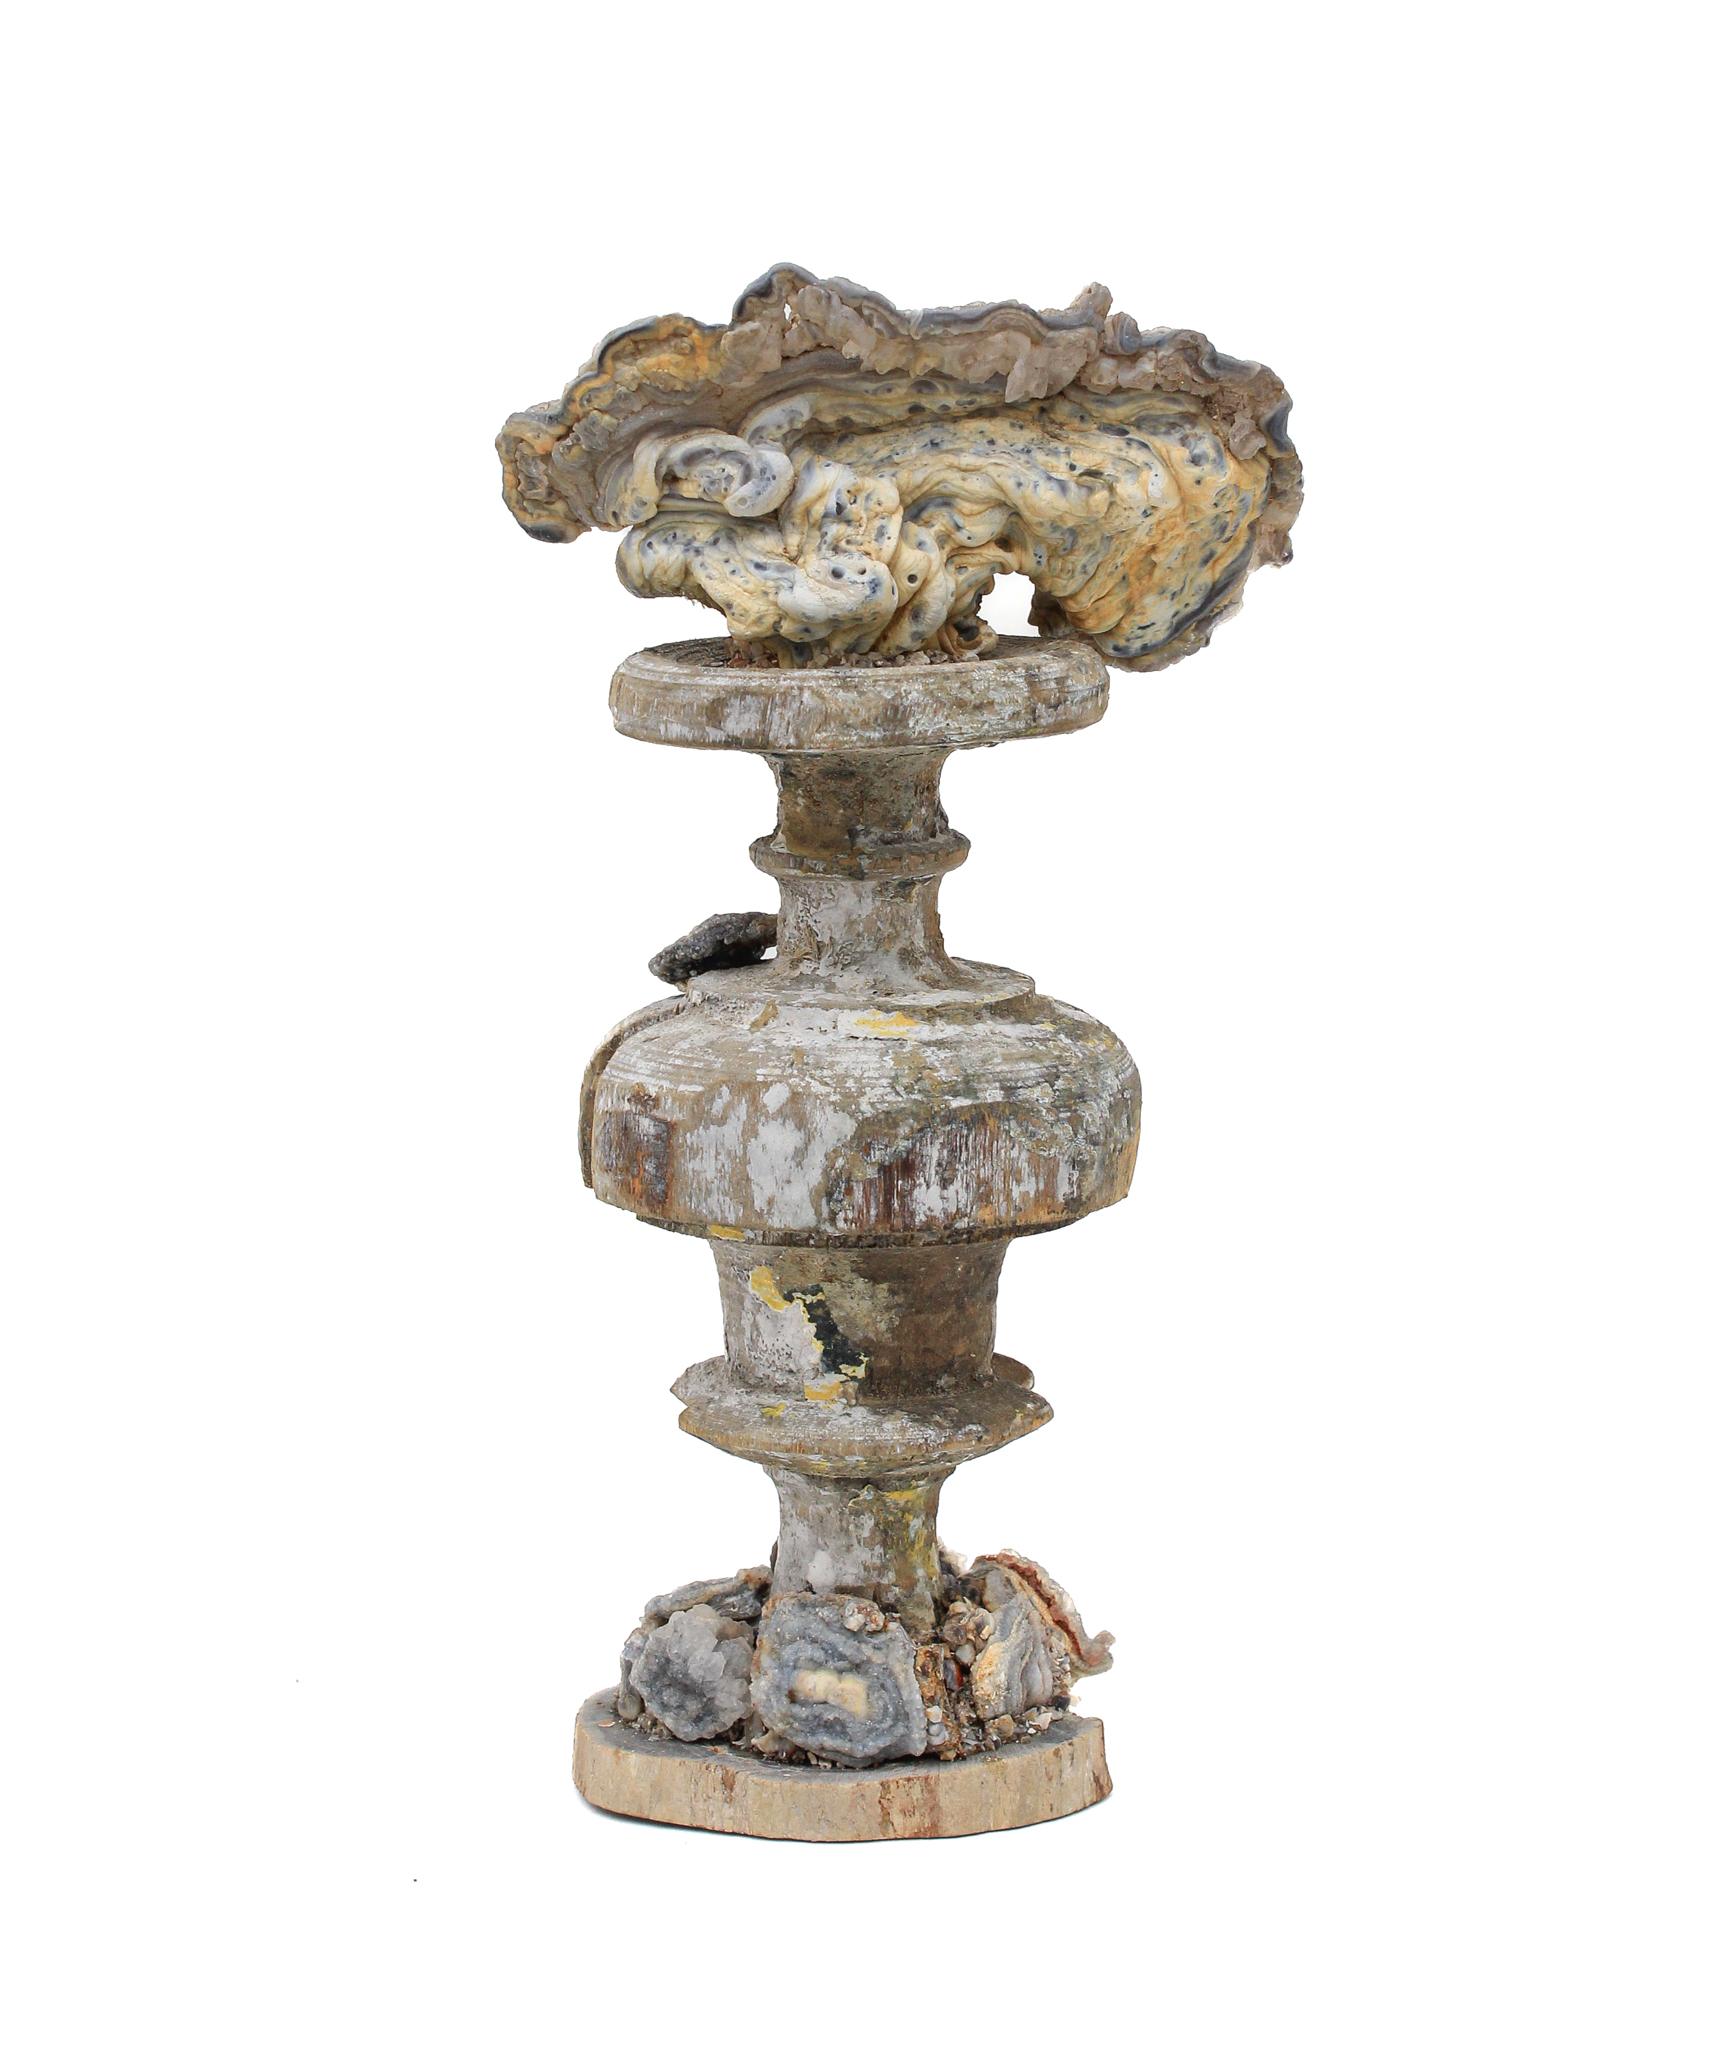 vase italien du XVIIe siècle monté et incrusté de rosettes en calcédoine sur une base en bois pétrifié.

Ce fragment provient d'une église de Florence. Il a été trouvé et sauvé de l'inondation historique de Florence en 1966. Cette inondation,